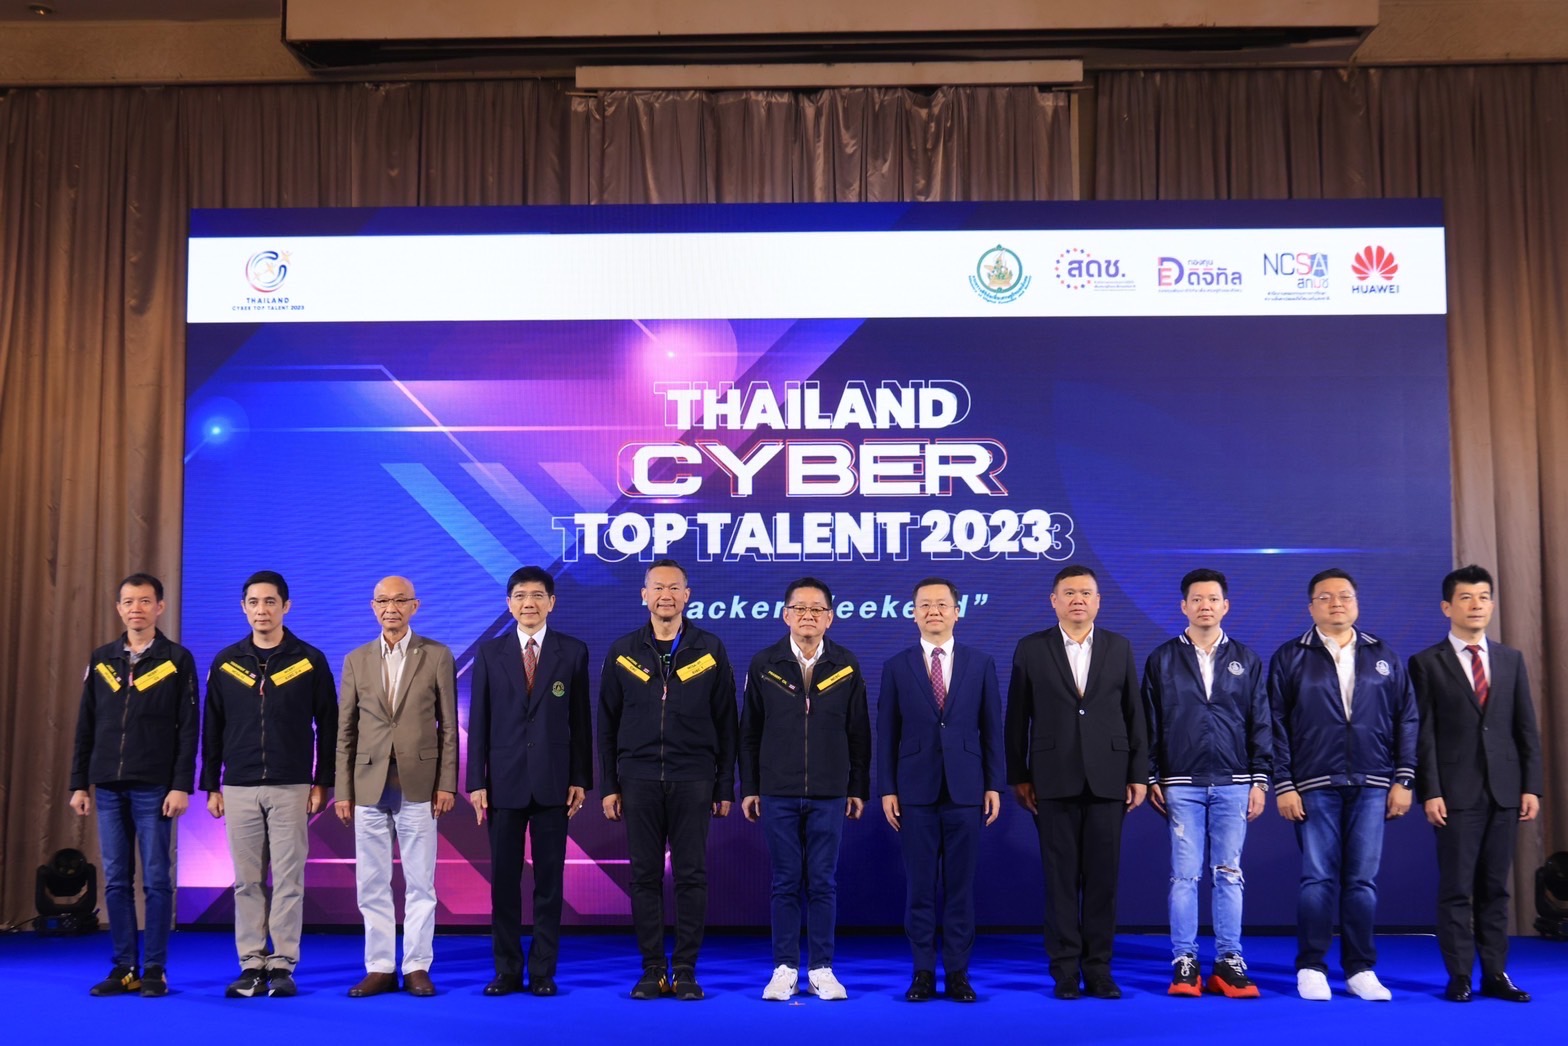 ปิดฉากการแข่งขัน “Thailand Cyber Top Talent 2023” ยิ่งใหญ่ที่สุดในไทยและอาเซียน